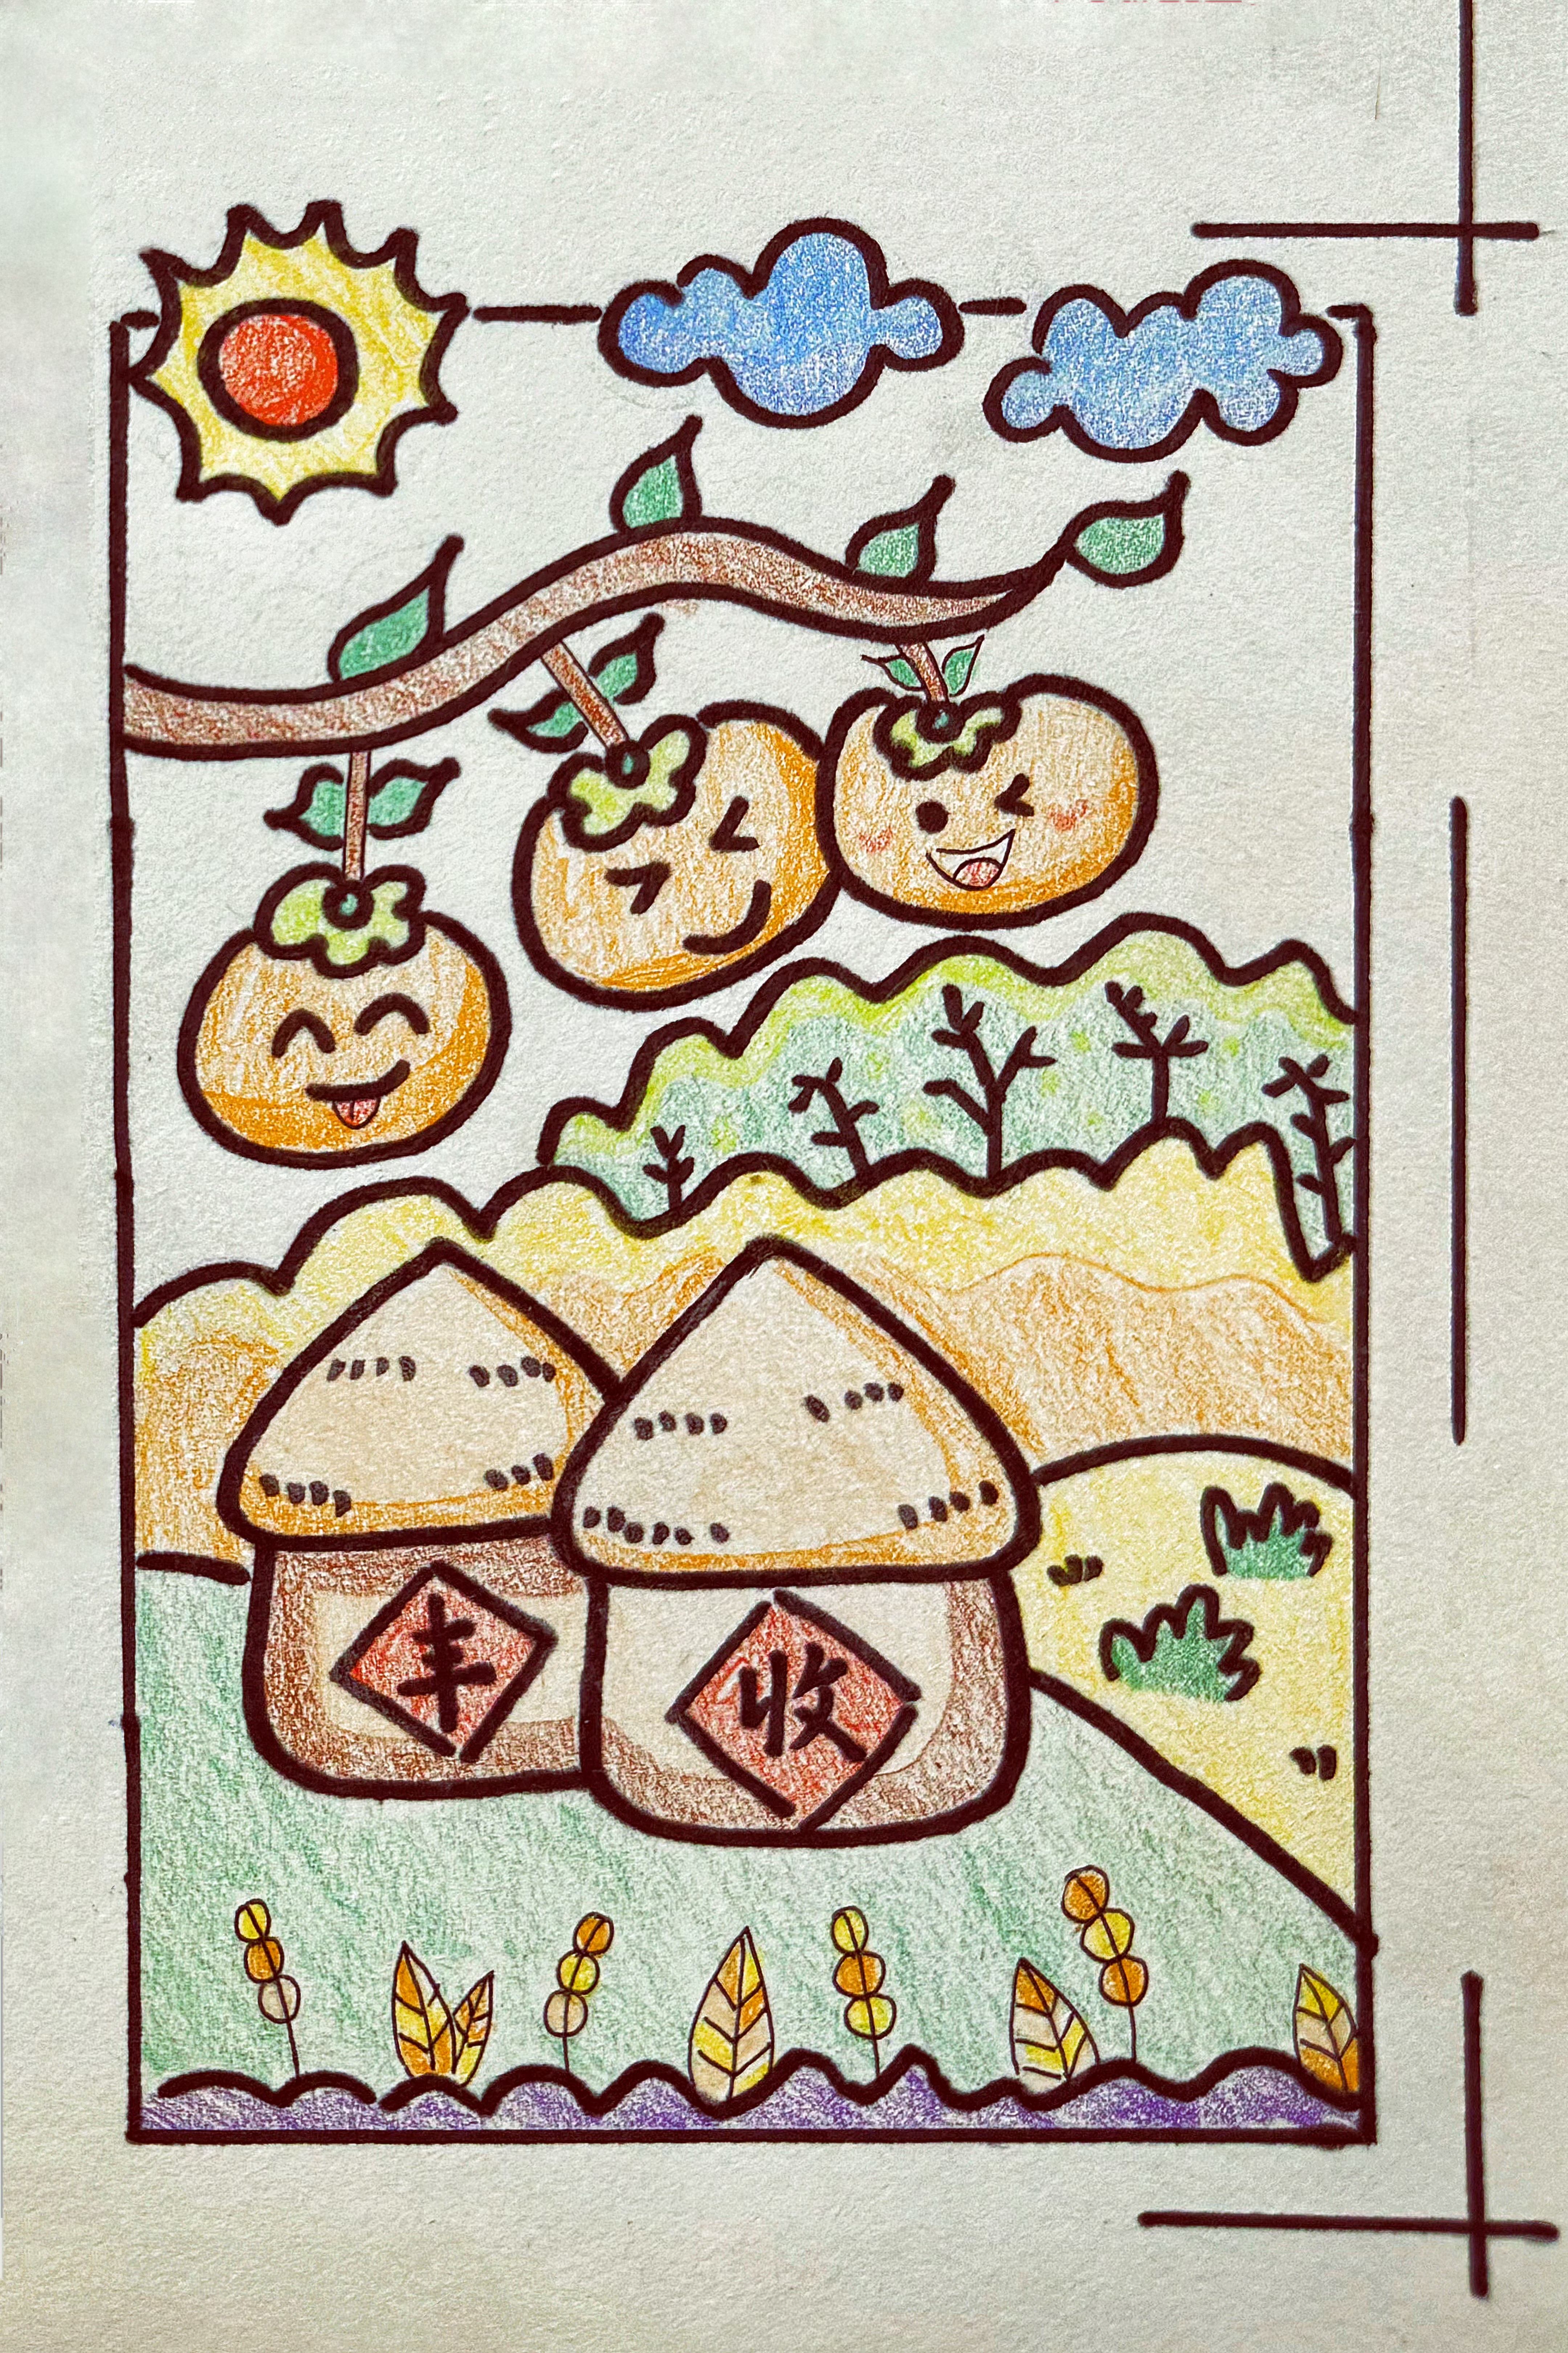 在zu hua的右下方，一片丰收的景象被展现出来，三个柿子，象征着事事如意。